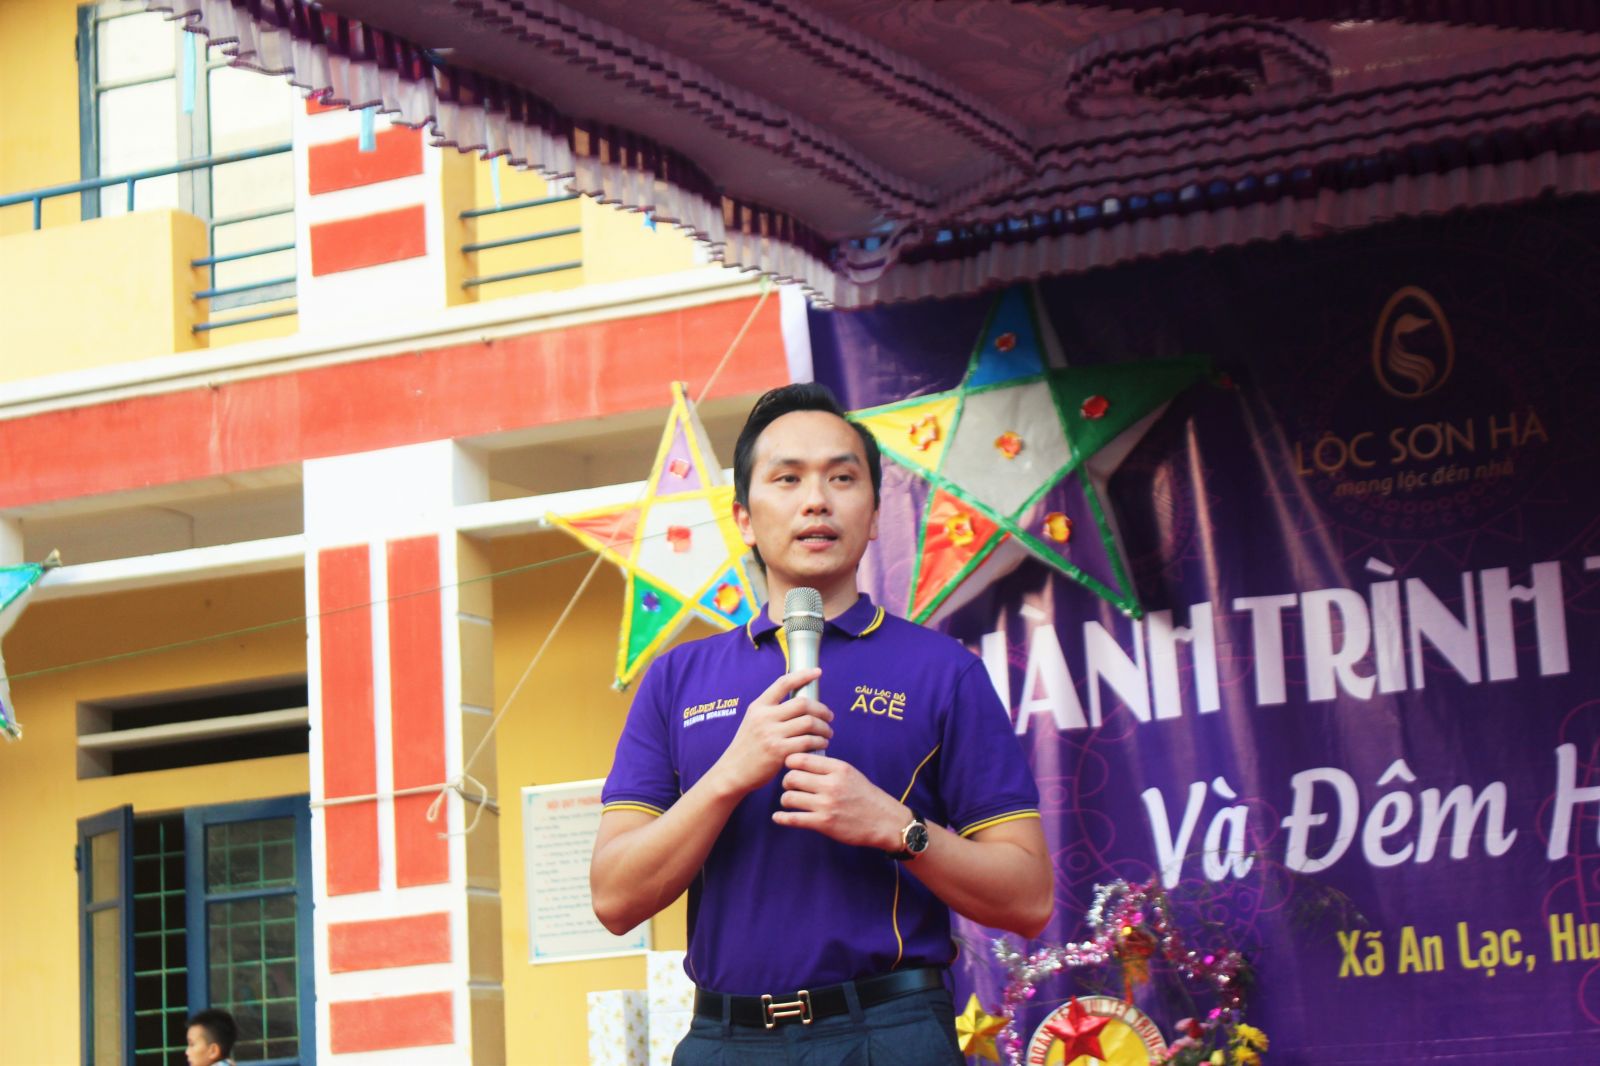 Doanh nhân Nguyễn Mạnh Hà phát biểu tại chương trình thiện nguyện mang tên 